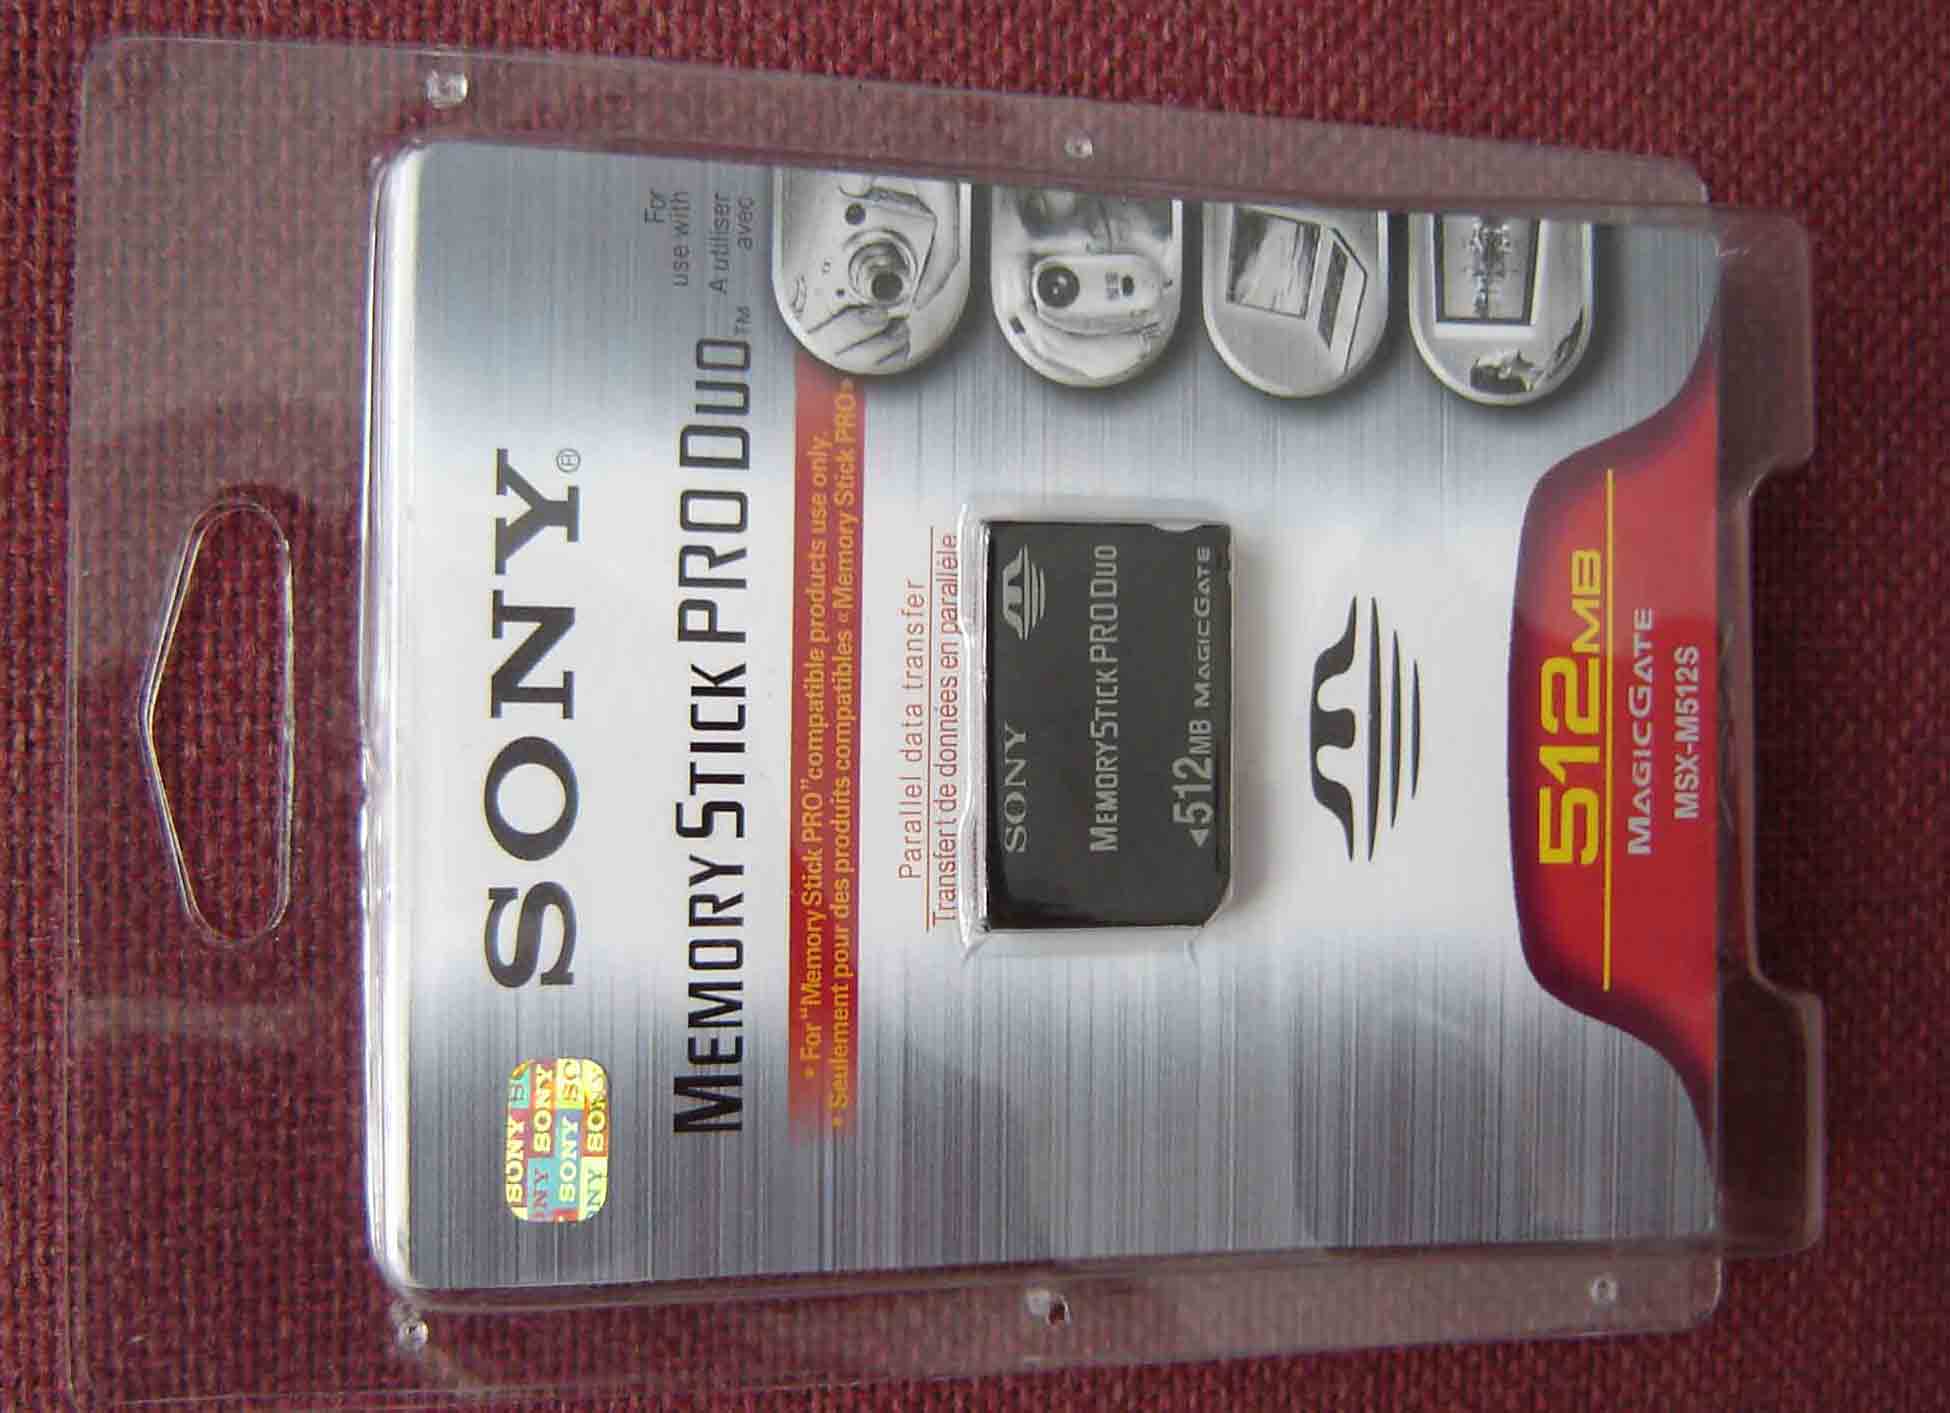  Sony / Sandisk Memory Stick (Sony / SanDisk Memory Stick)